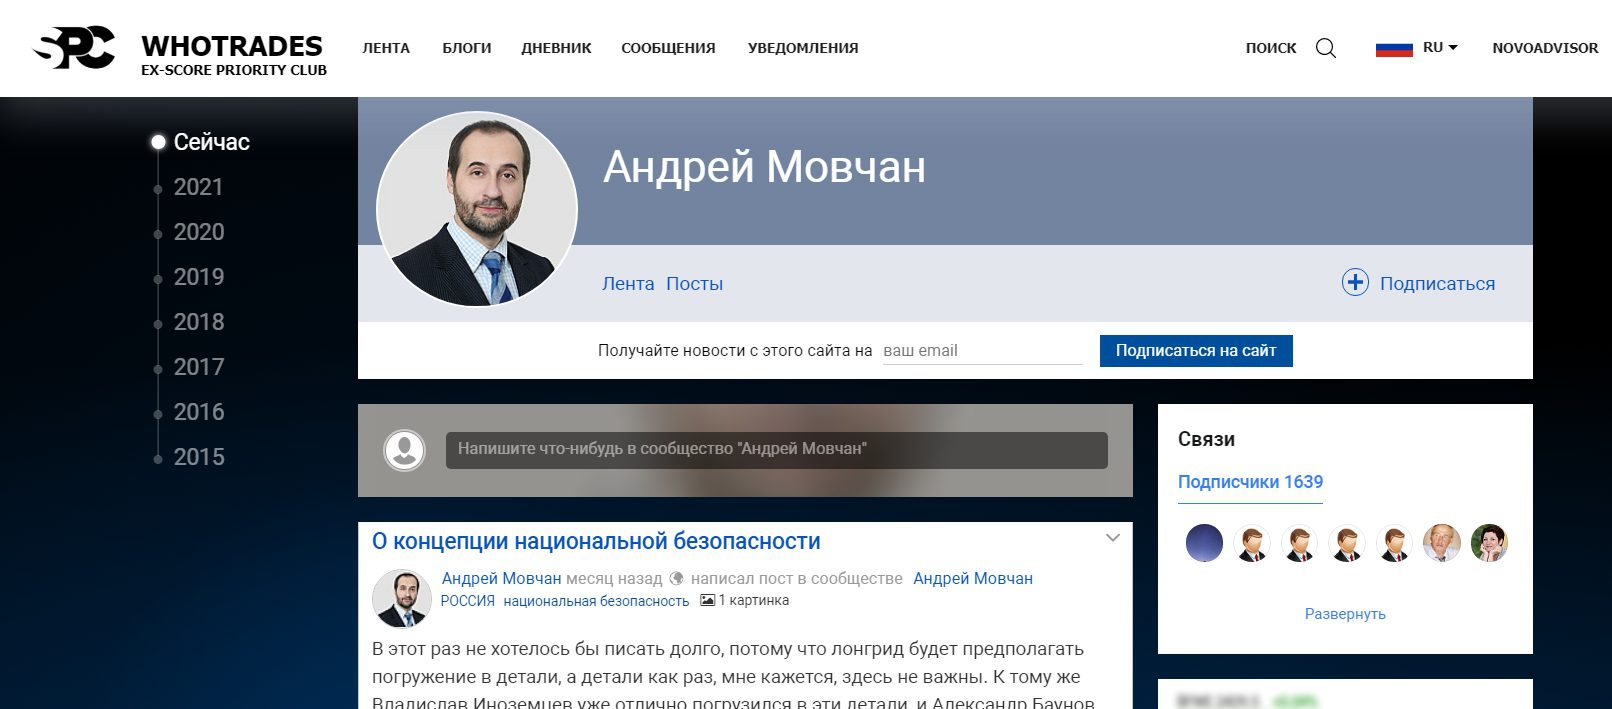 Андрей Мовчан — финансист и специалист по инвестированию